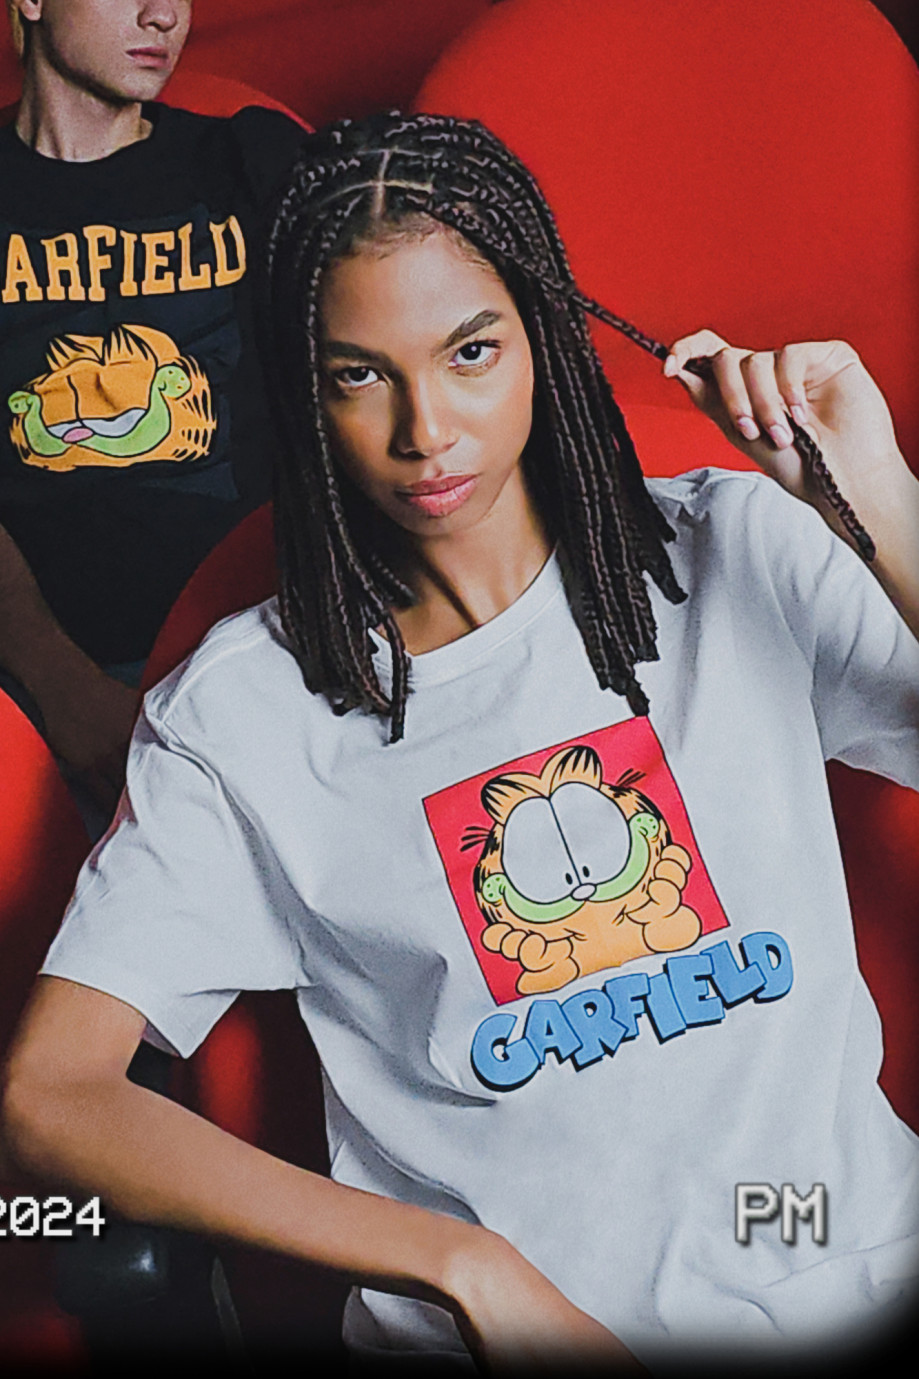 Camiseta crema con estampado de Garfield y manga corta